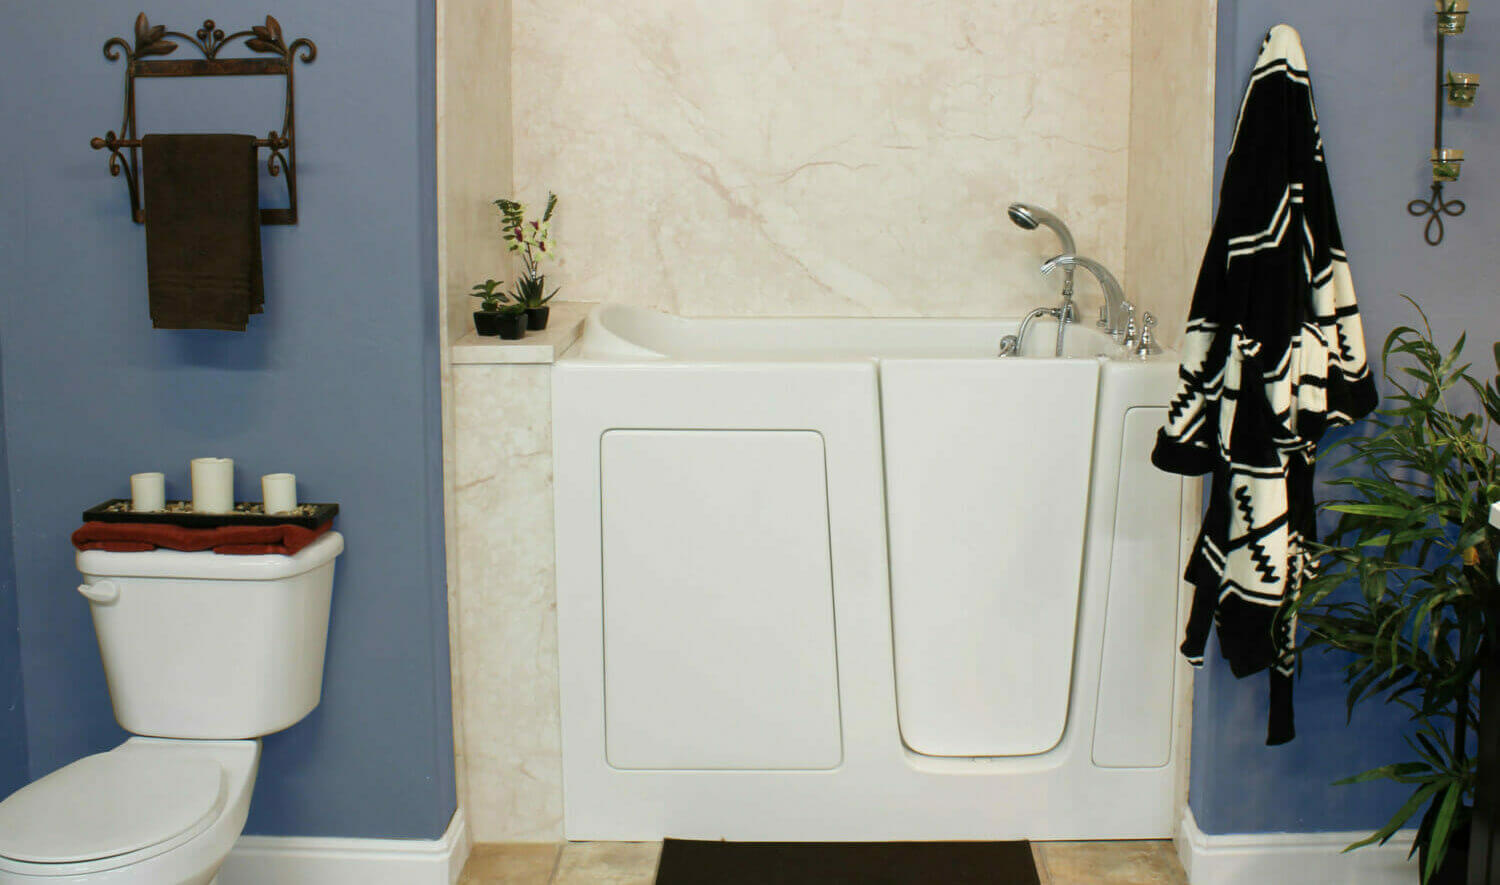 Five Star Bath Solutions of Austin Walk-in Bathtub Installation